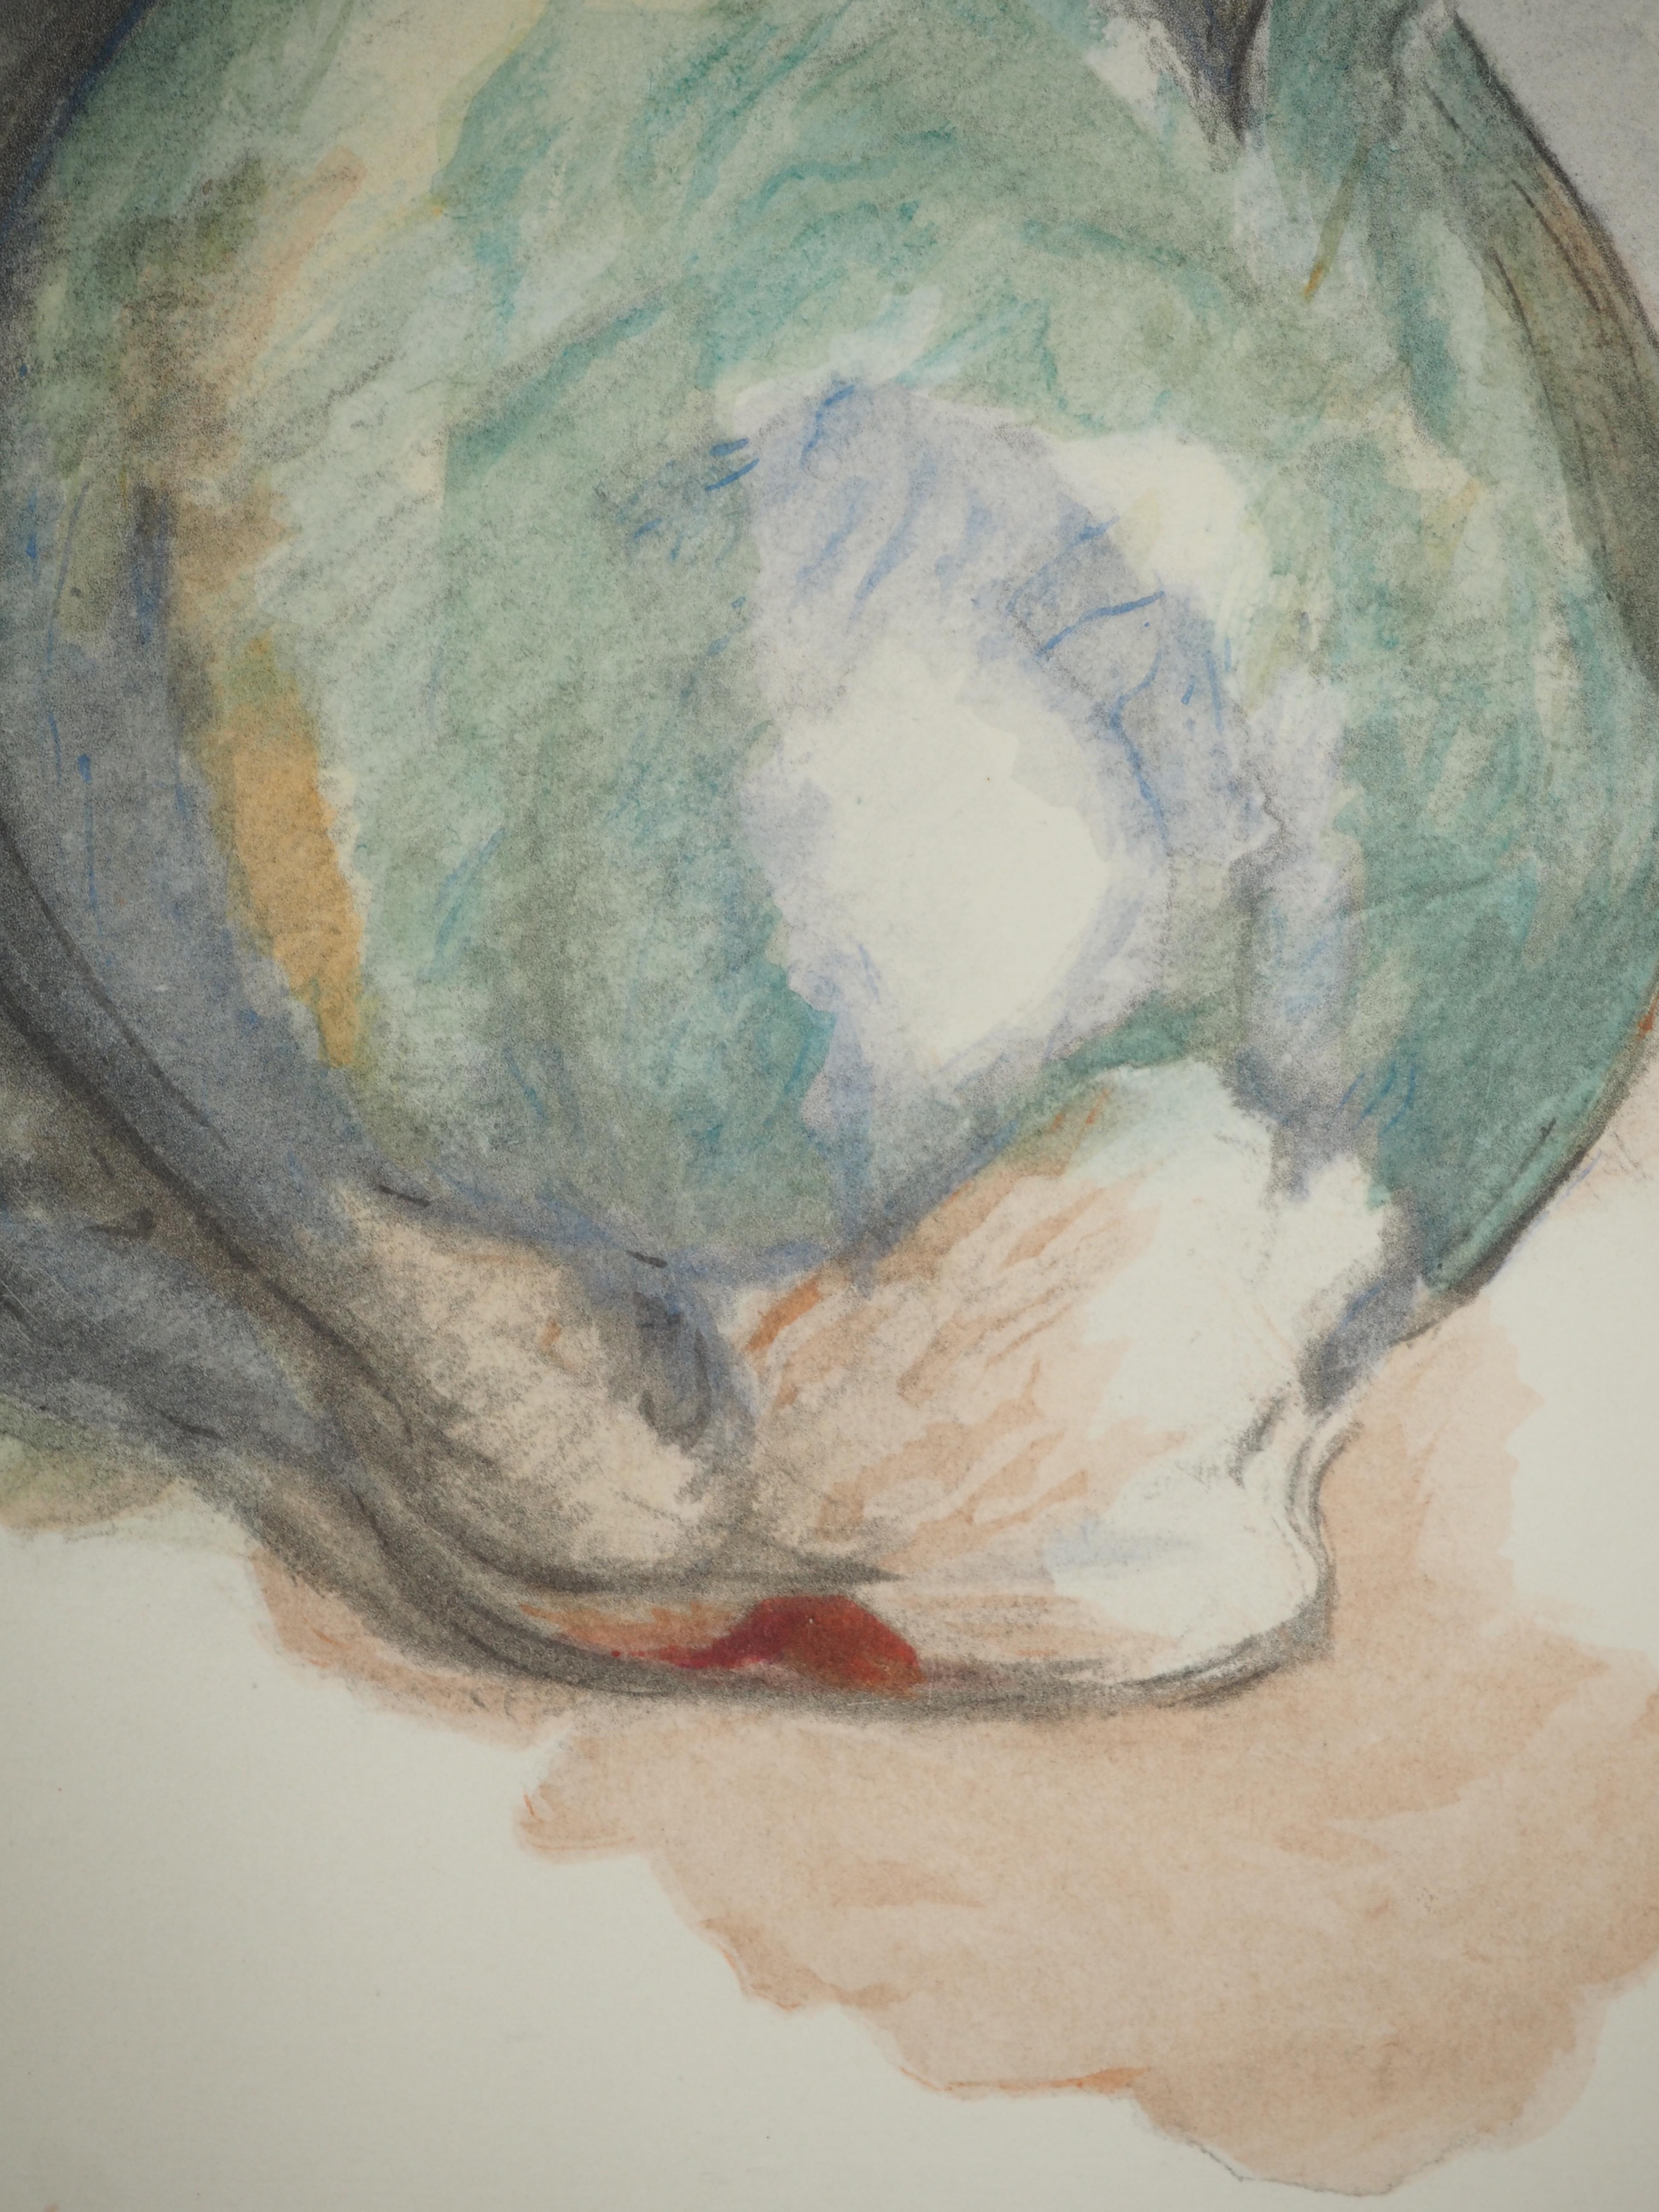 Paul Cezanne
Der grüne Krug, 1971

Lithographie und Schablone (Werkstatt Jacomet)
Vorzeichenlos
Nummeriert / 225
Auf Papier, aufgetragen auf Arches Vellum 53,5 x 41,5 cm (ca. 21 x 16,5 Zoll)
Bildgröße: 20 x 23 (ca. 8 x 9 Zoll)

INFORMATION : Diese